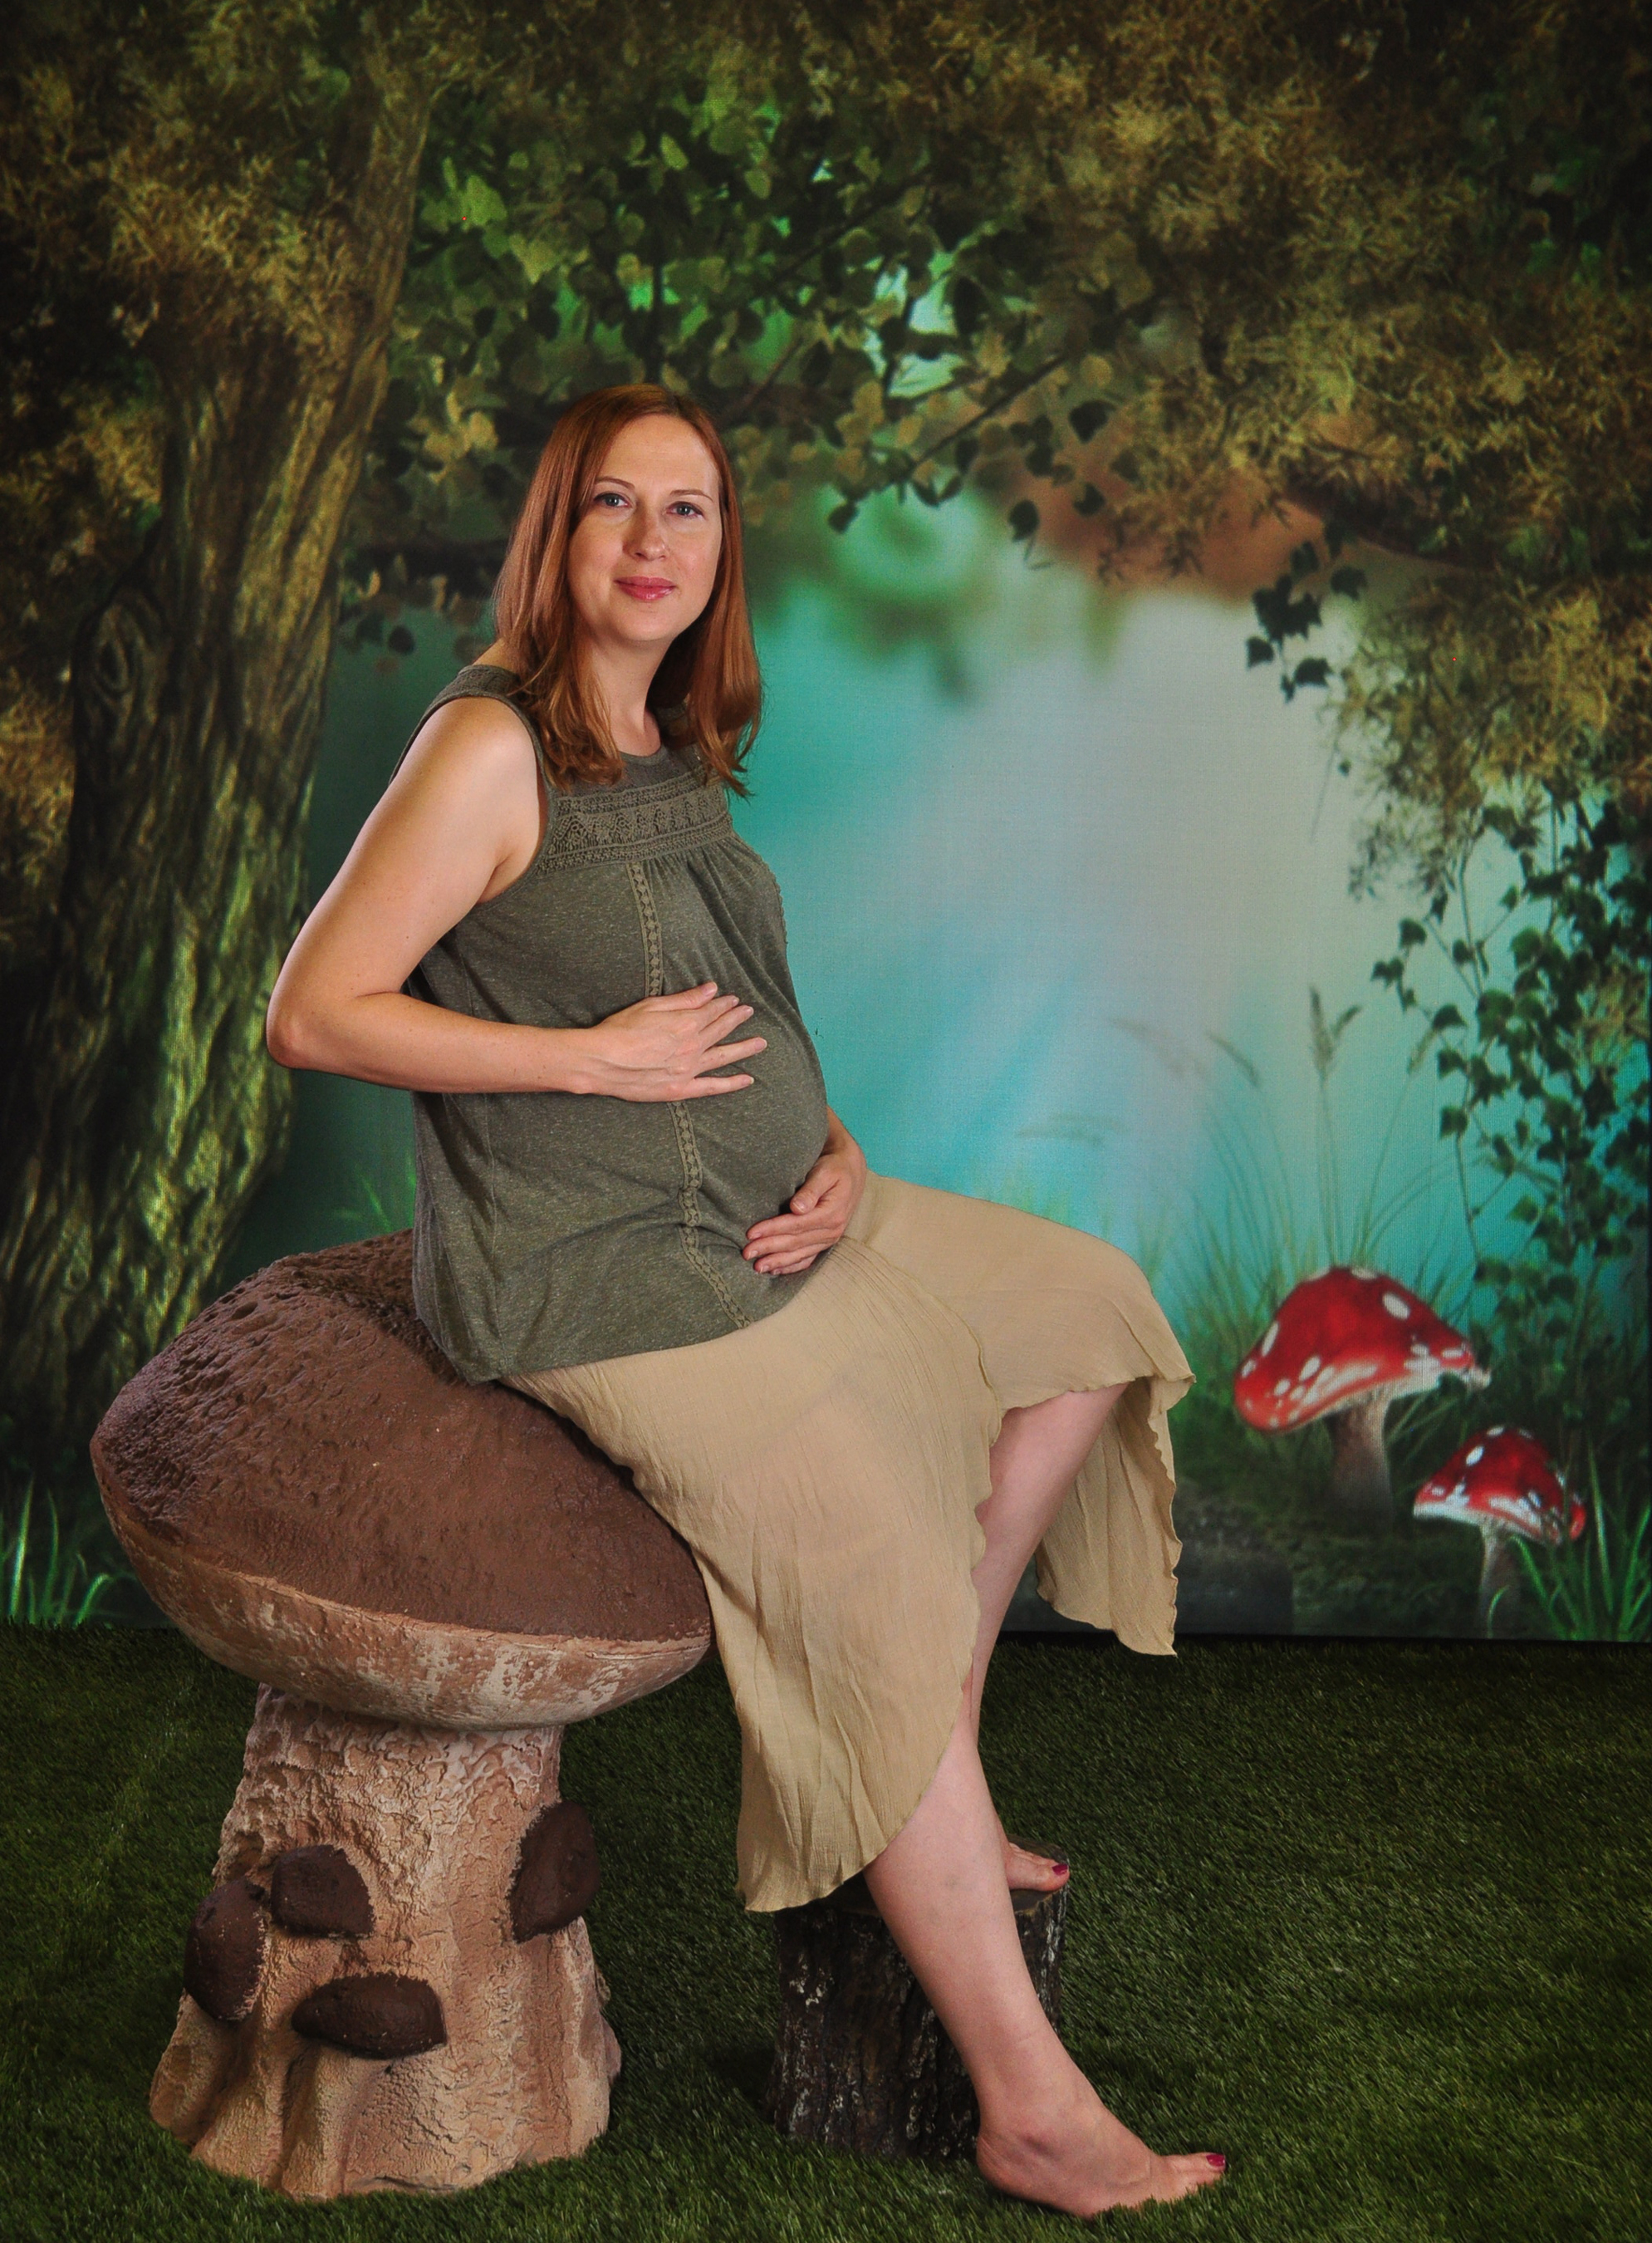 August 2016 maternity modeling shoot